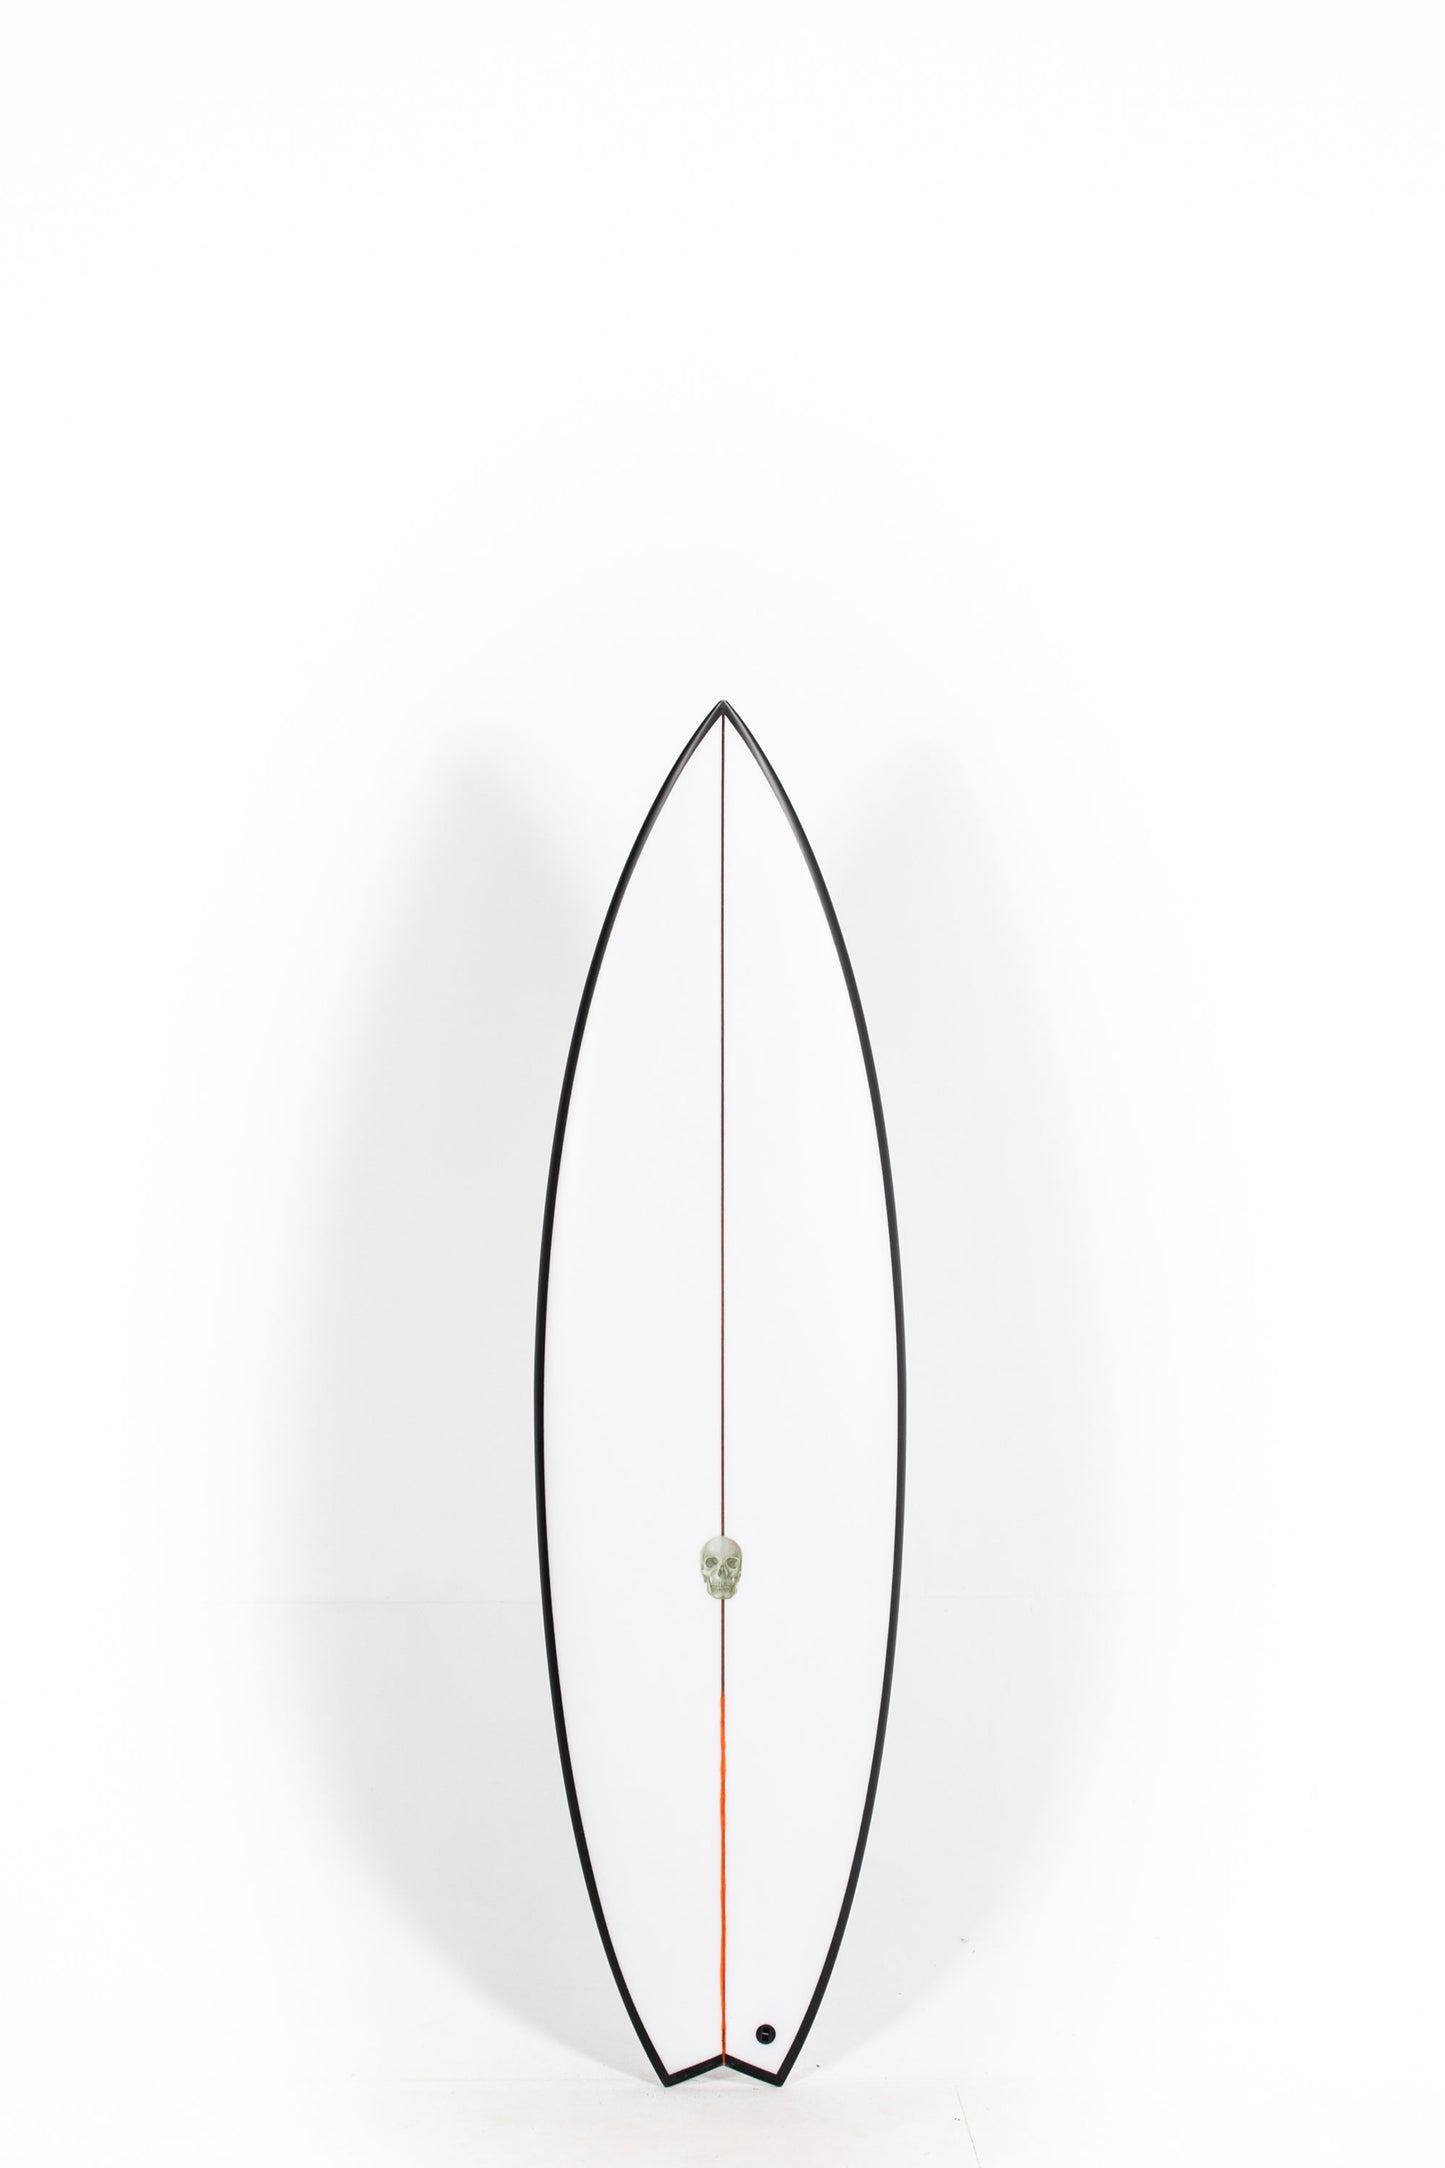 Pukas Surf Shop - Christenson Surfboards - OP3 - 6'1" x 20 x 2 5/8 x 33.36L - CX05006